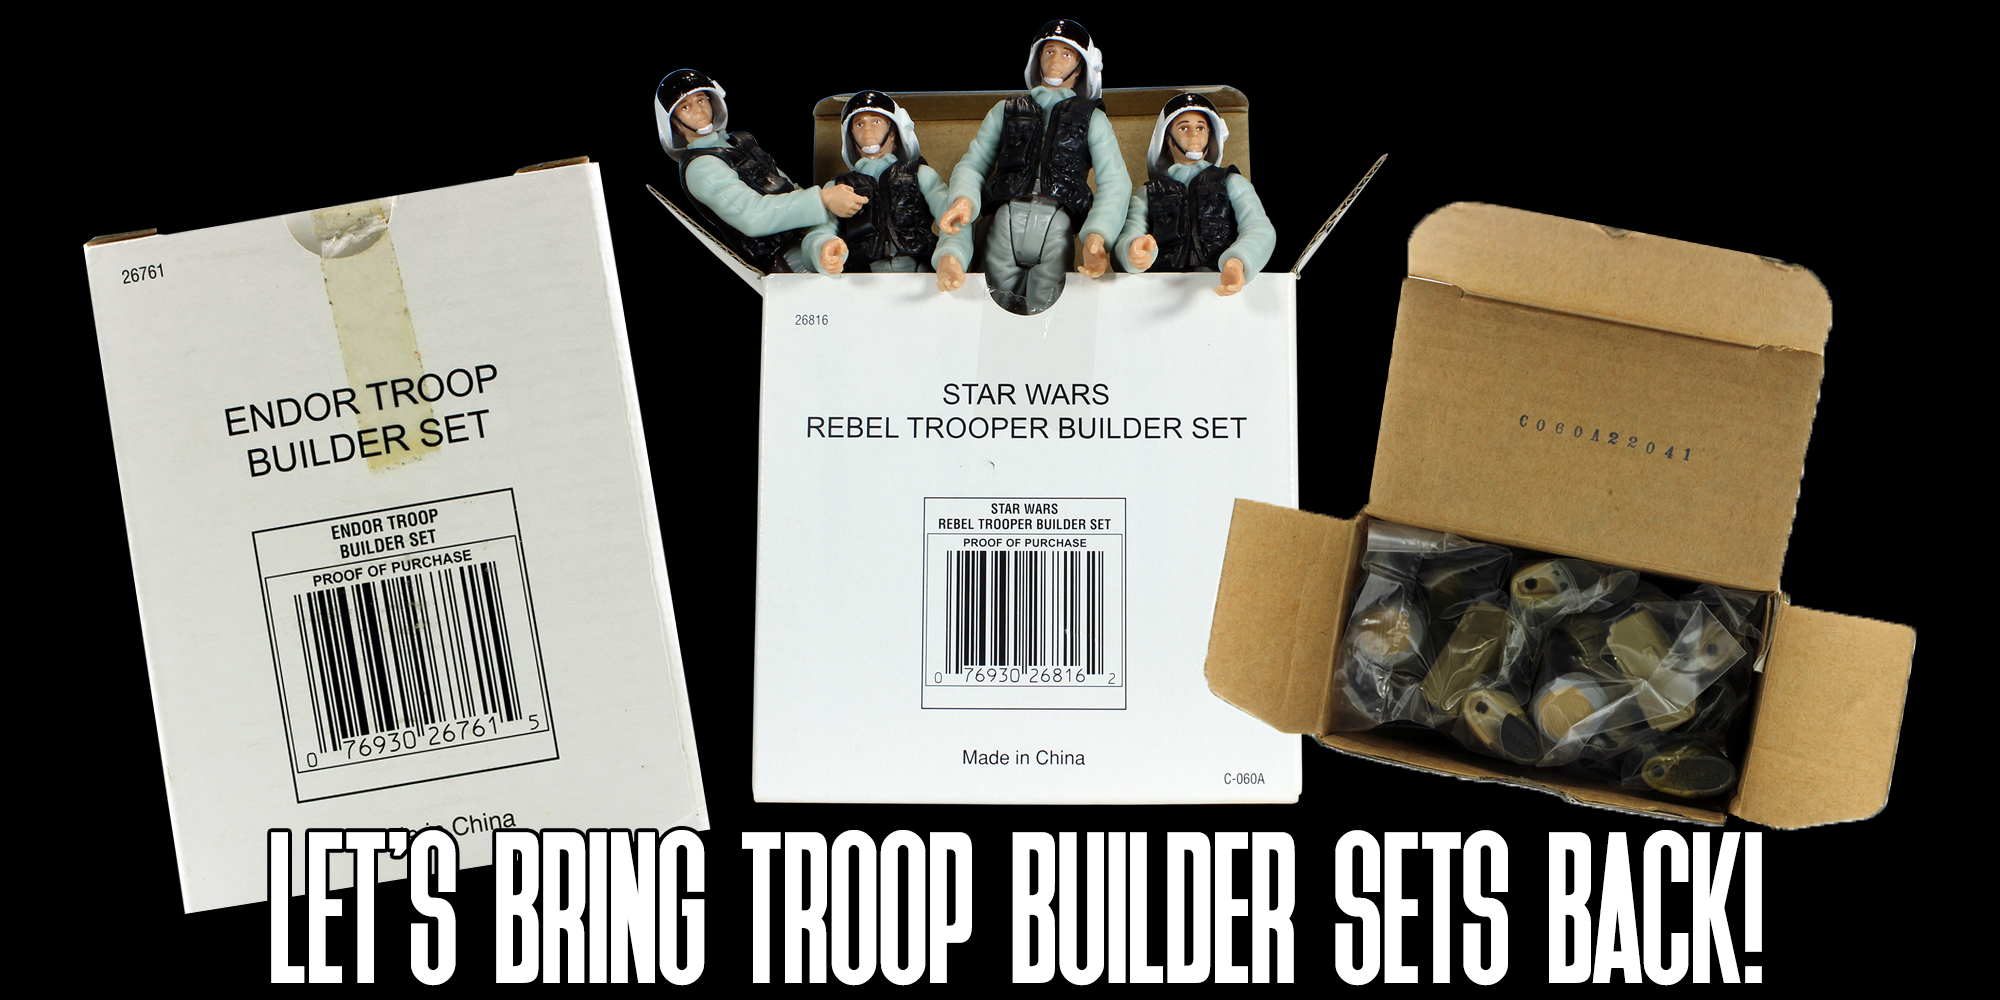 Let's Bring Back Troop Builder Sets!